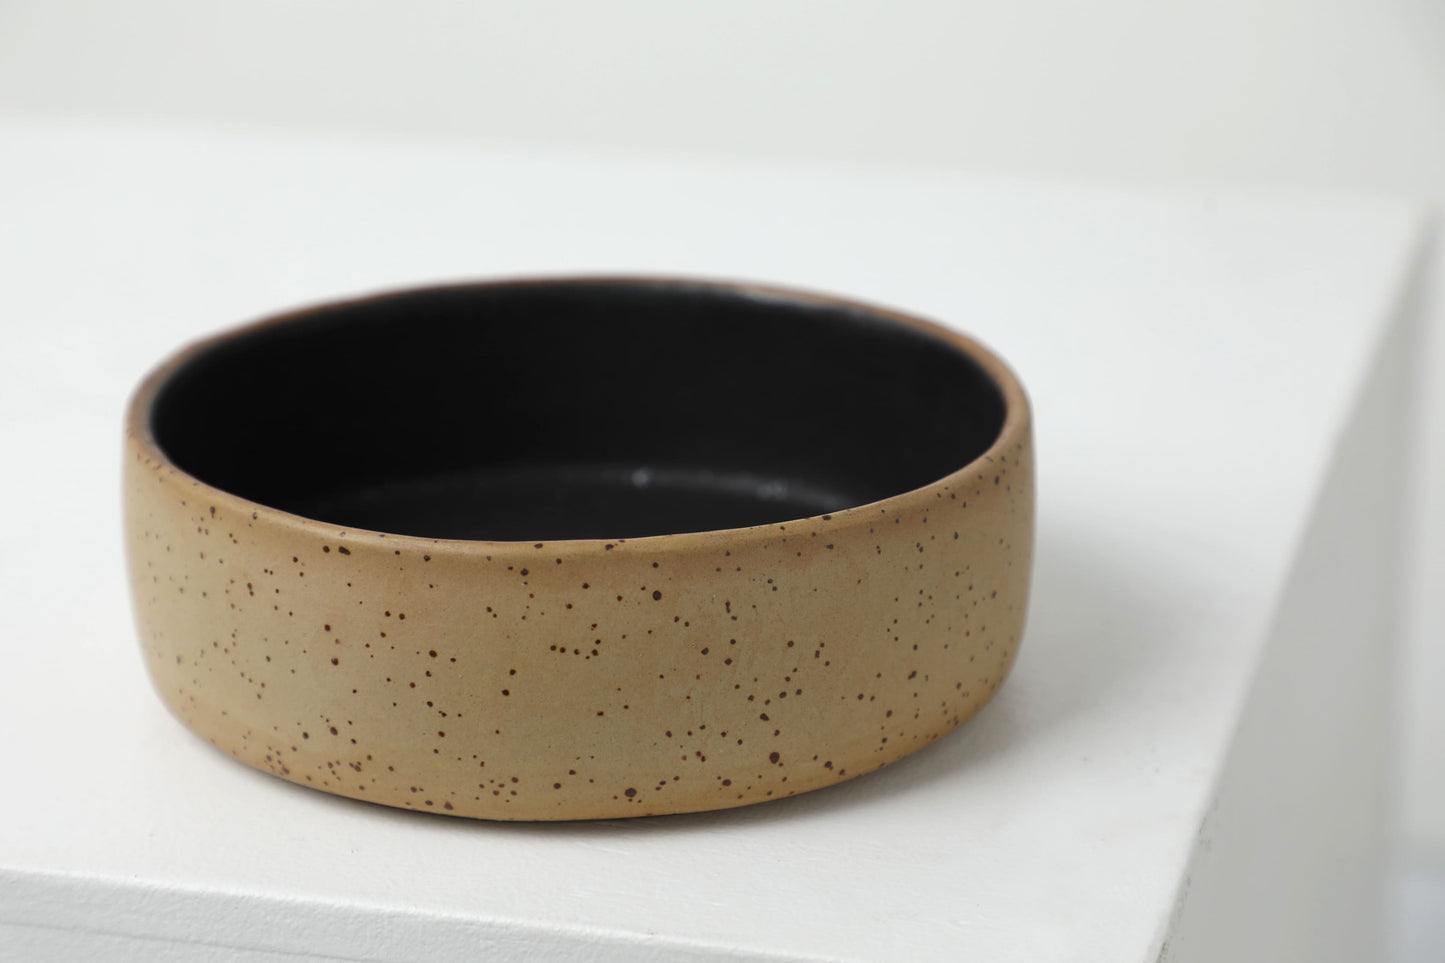 Handmade ceramic dog bowls | RAW+BLACK - premium dog goods handmade in Europe by animalistus